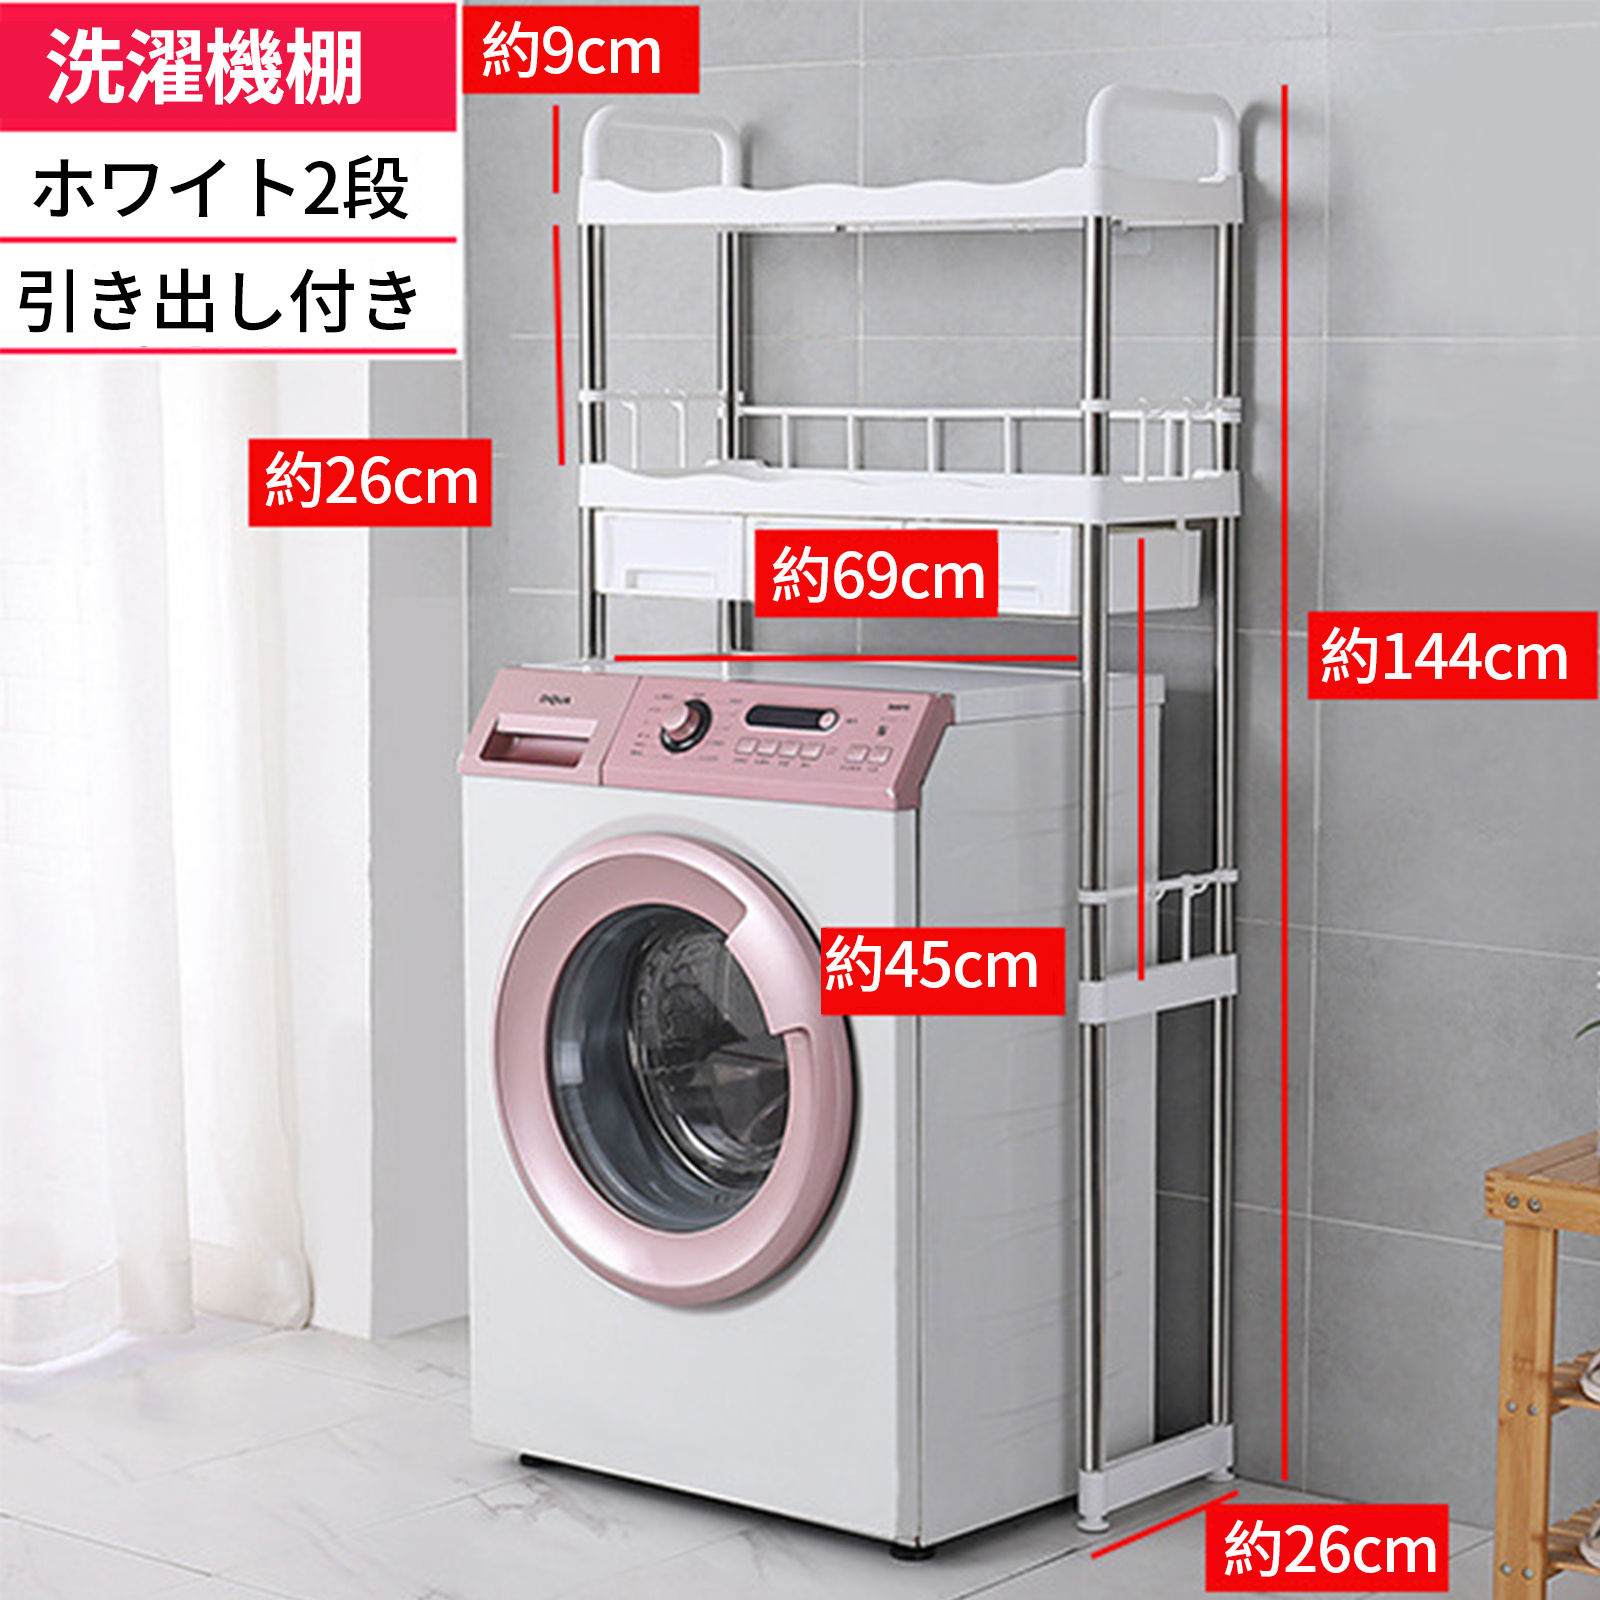 White washing machine rack [ with drawer ]